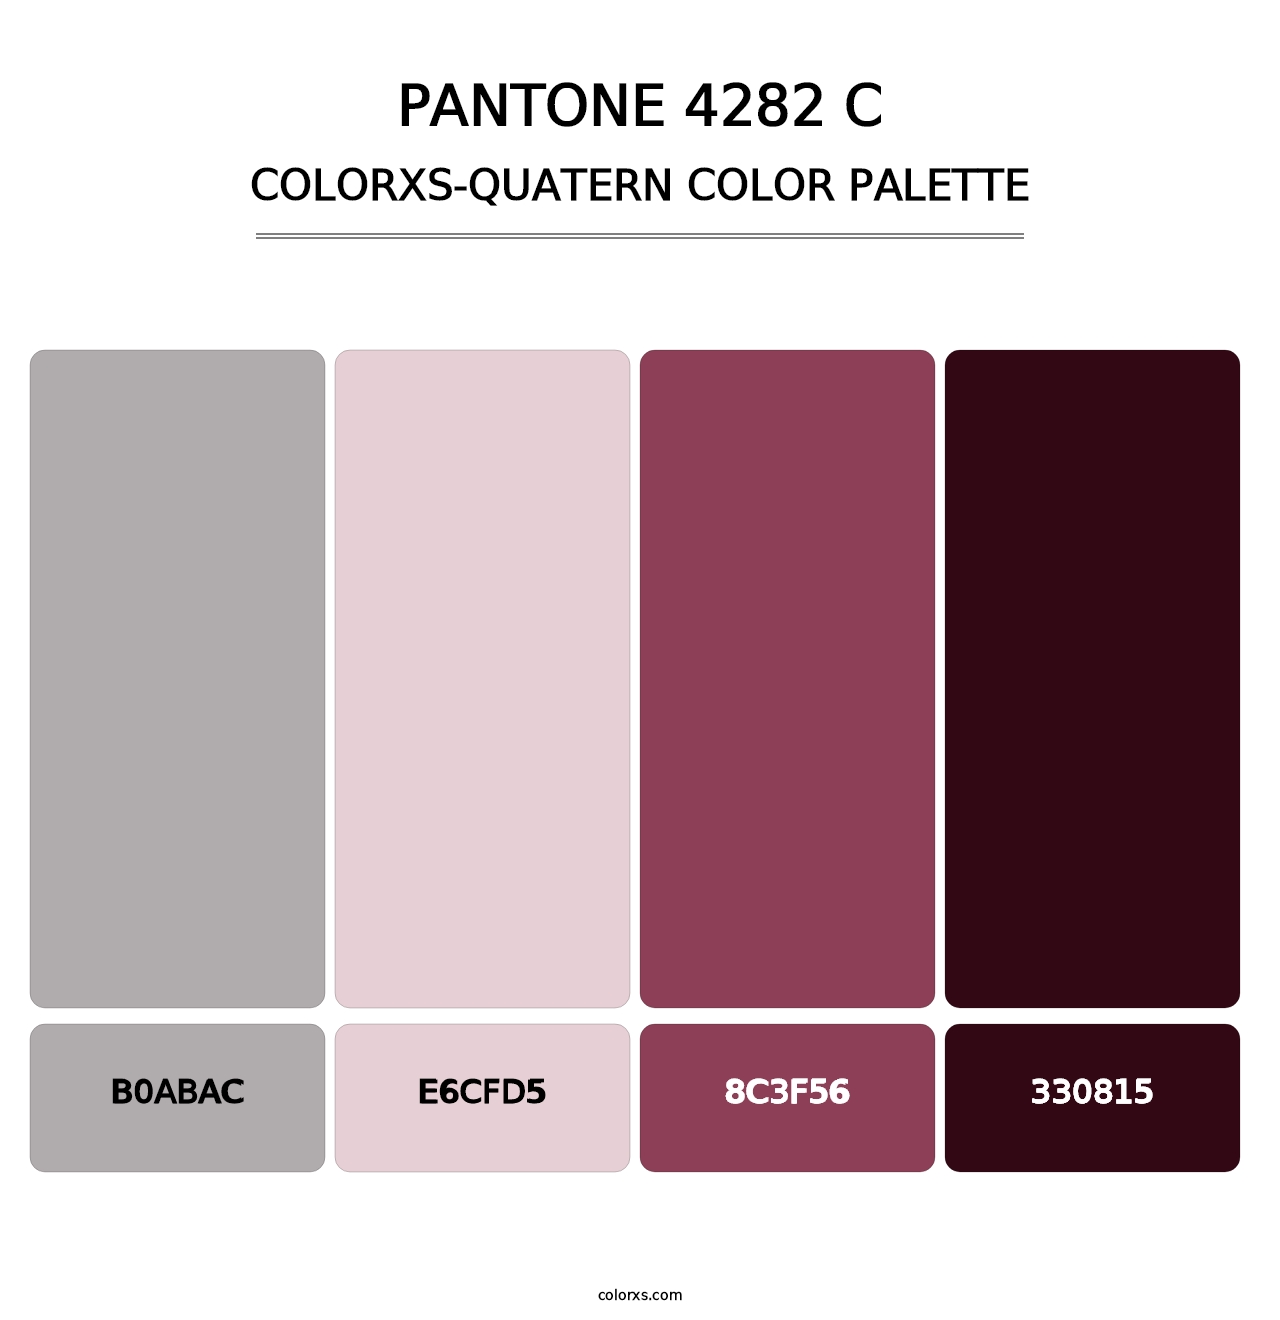 PANTONE 4282 C - Colorxs Quatern Palette